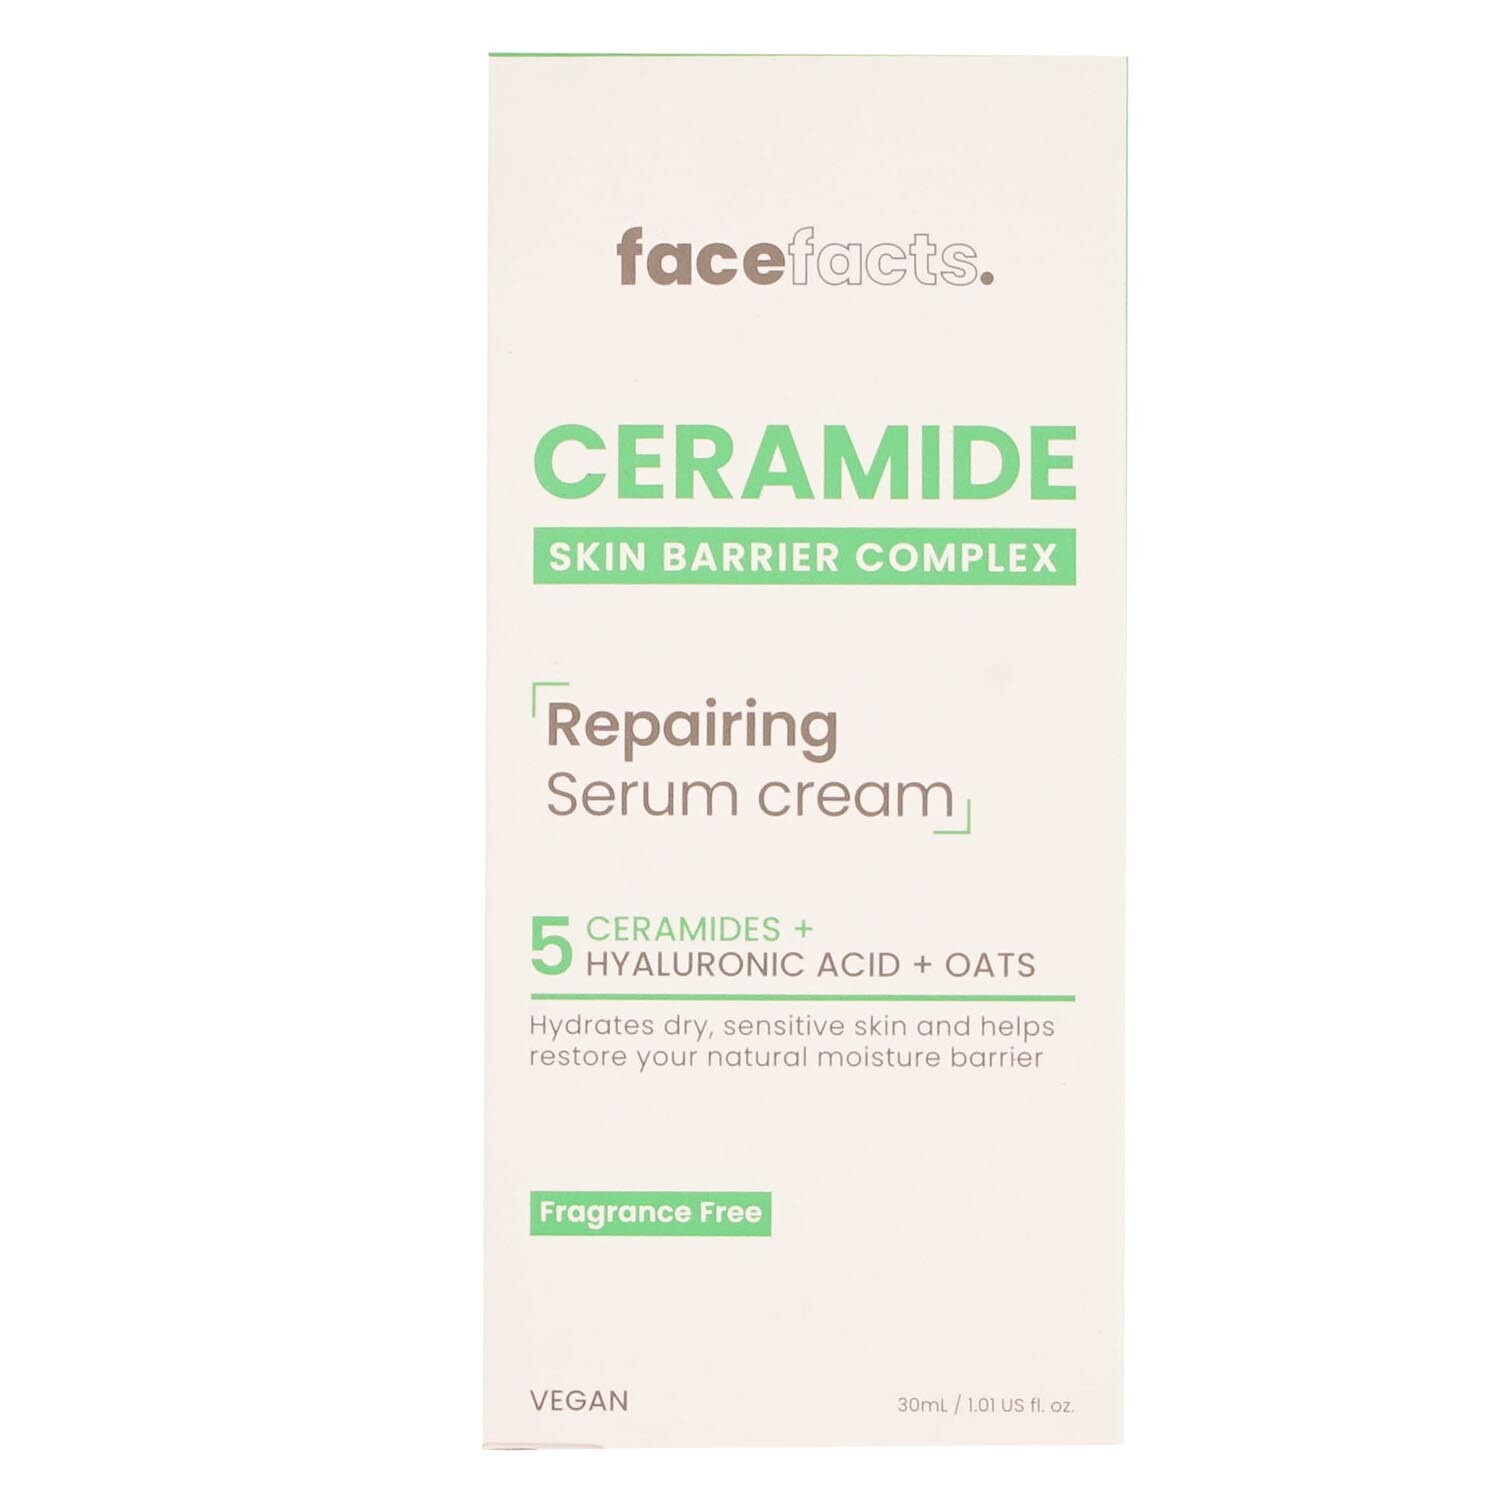 Face Facts Ceramide Repairing Serum Cream Image 1